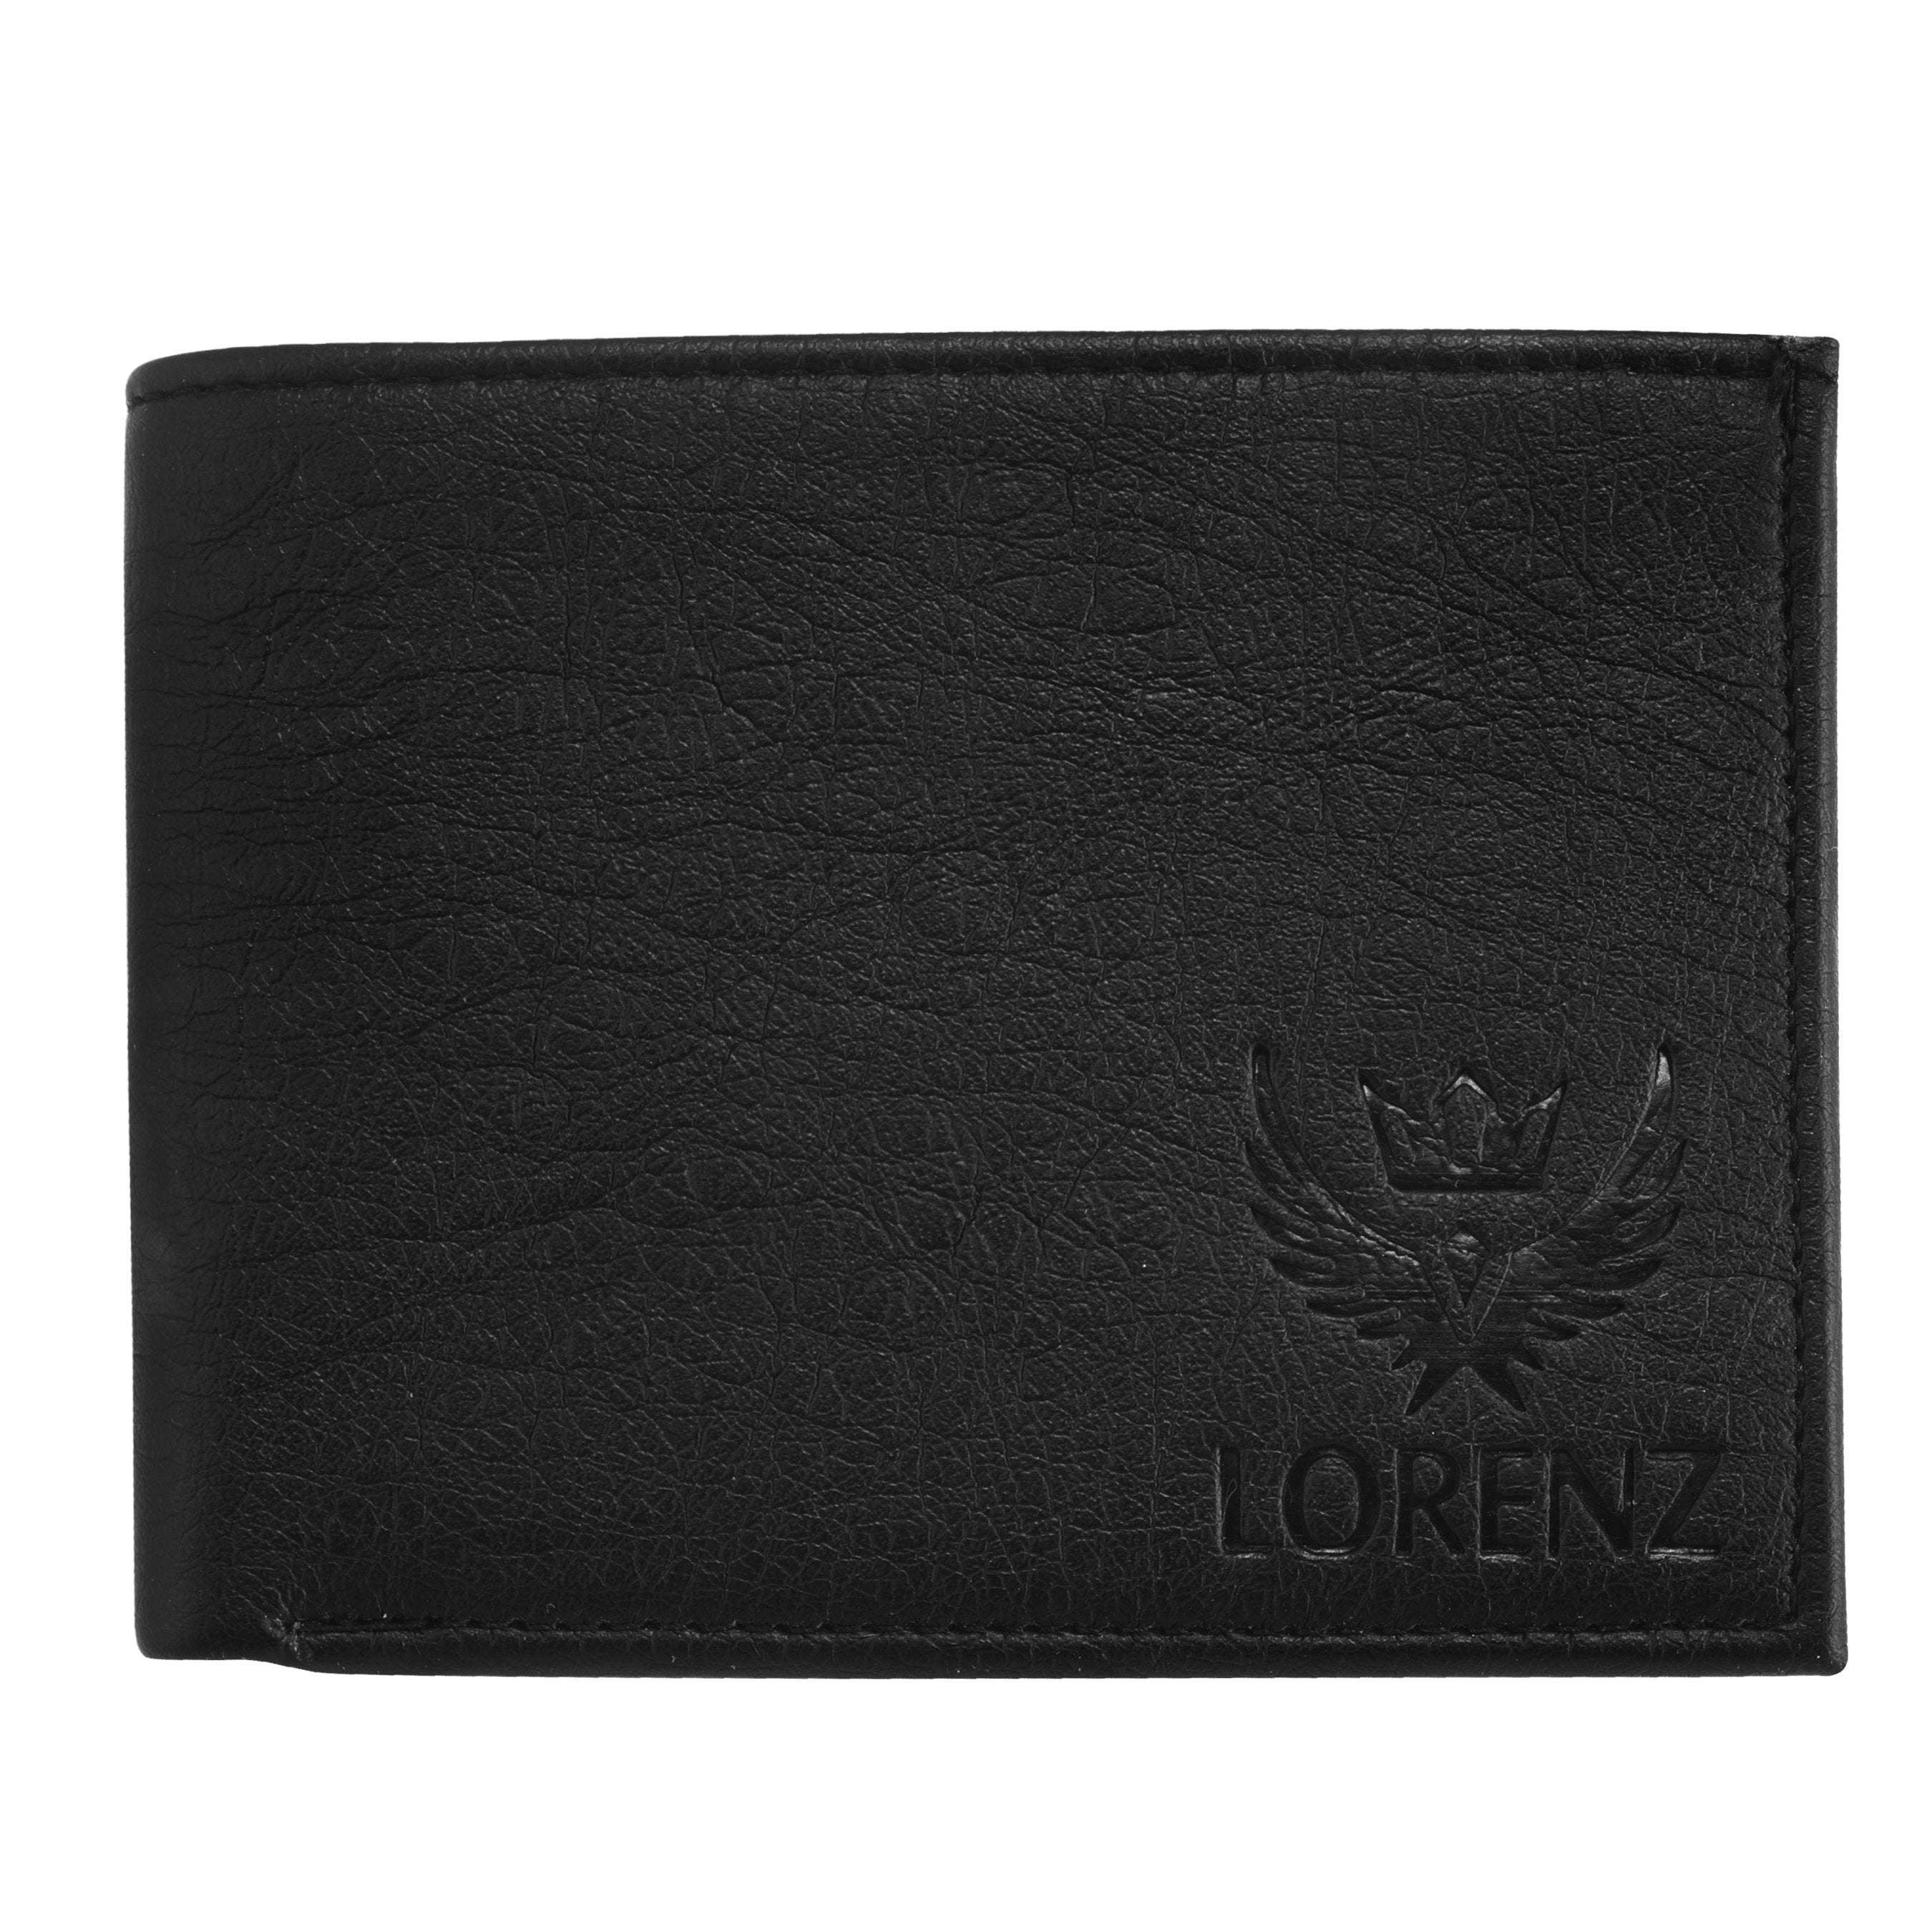 Lorenz Black Bi-Fold Wallet 